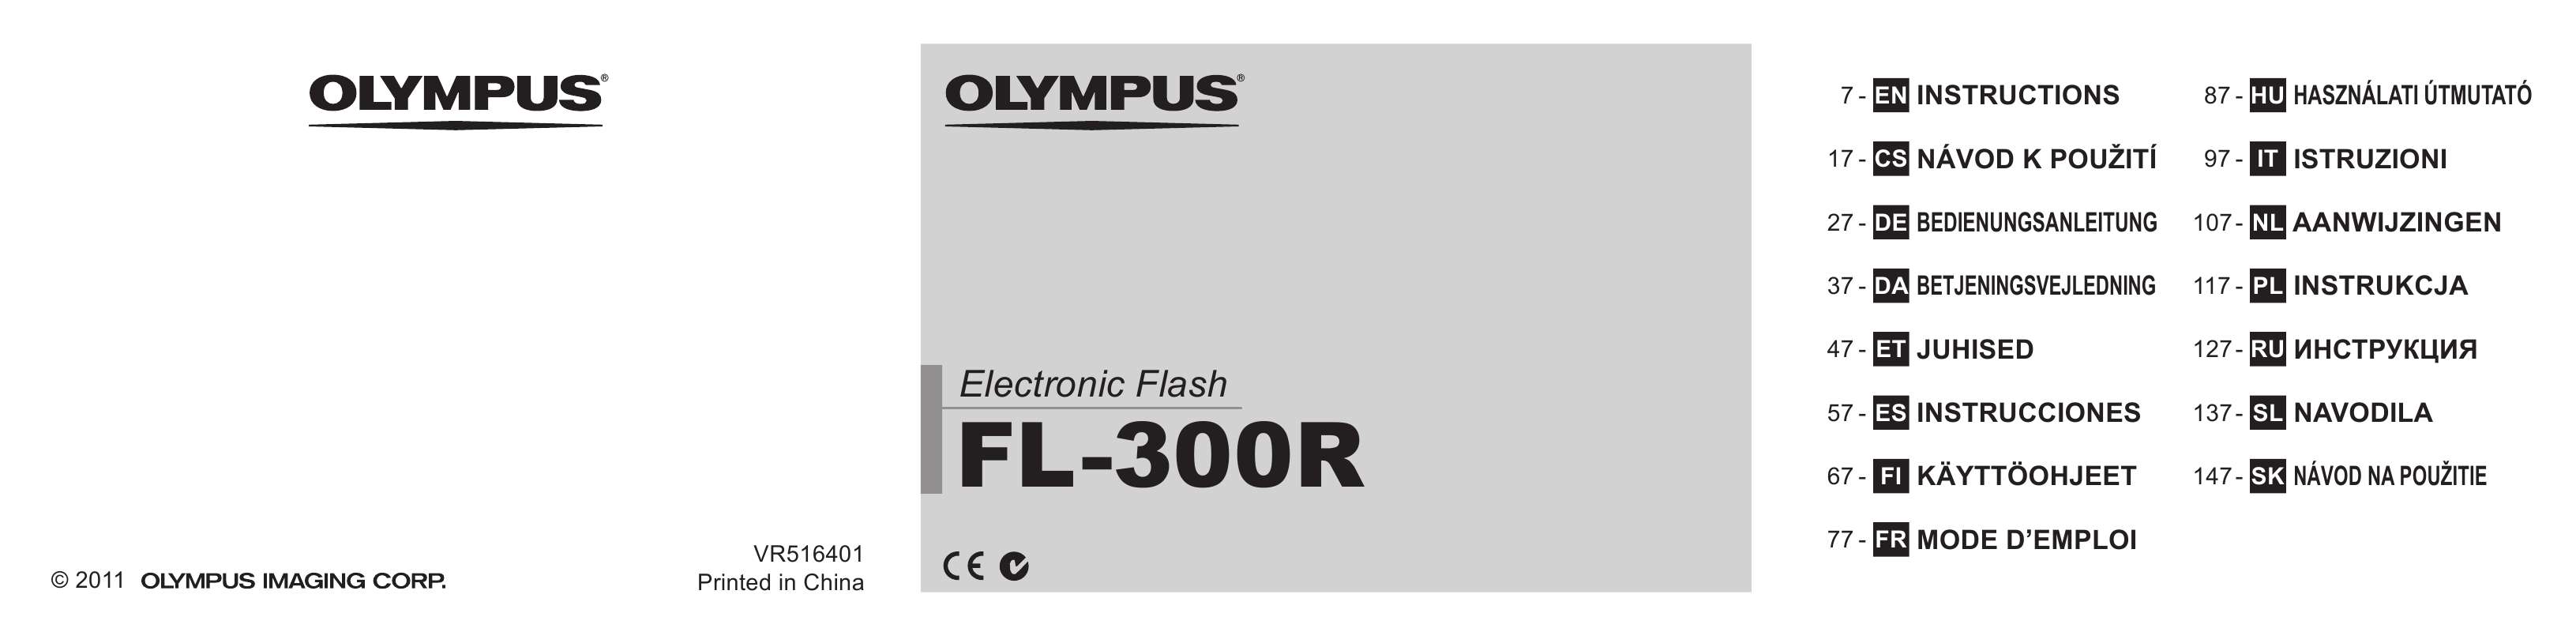 Guide utilisation OLYMPUS FL-300R  de la marque OLYMPUS